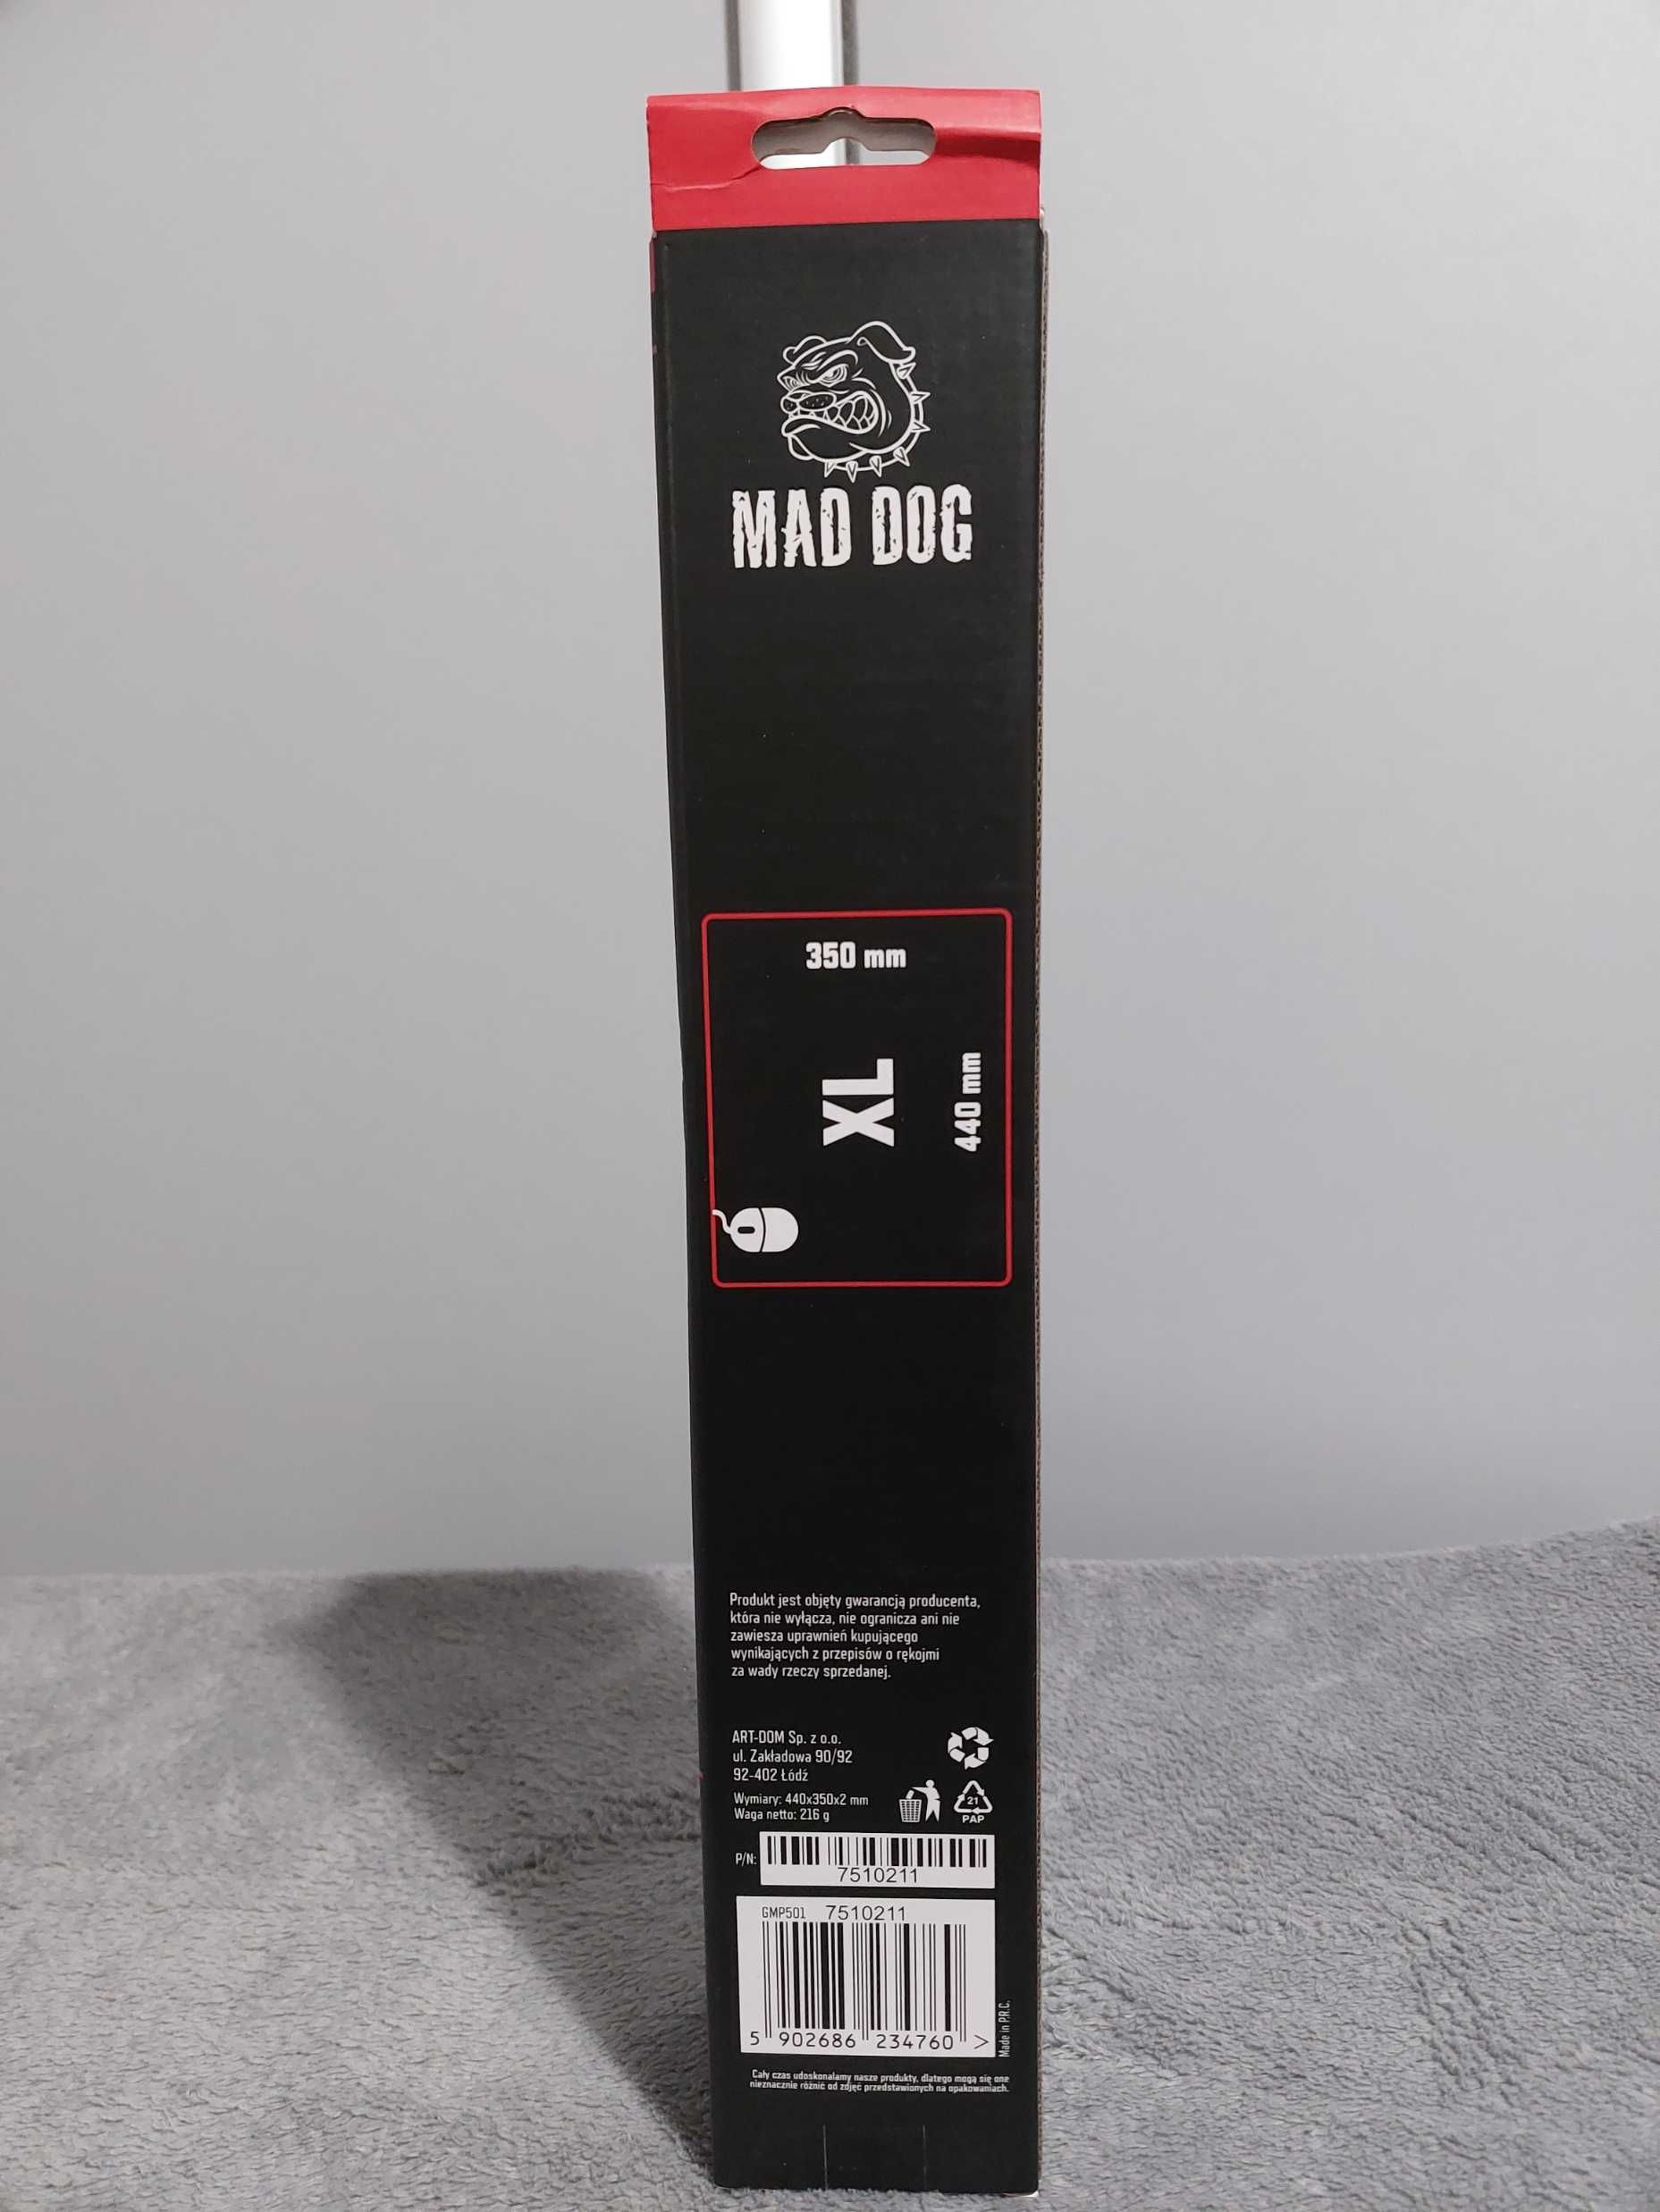 Podkładka MAD DOG GMP501 XL antypoślizgowa wodoodporna 35 cm x 44 cm